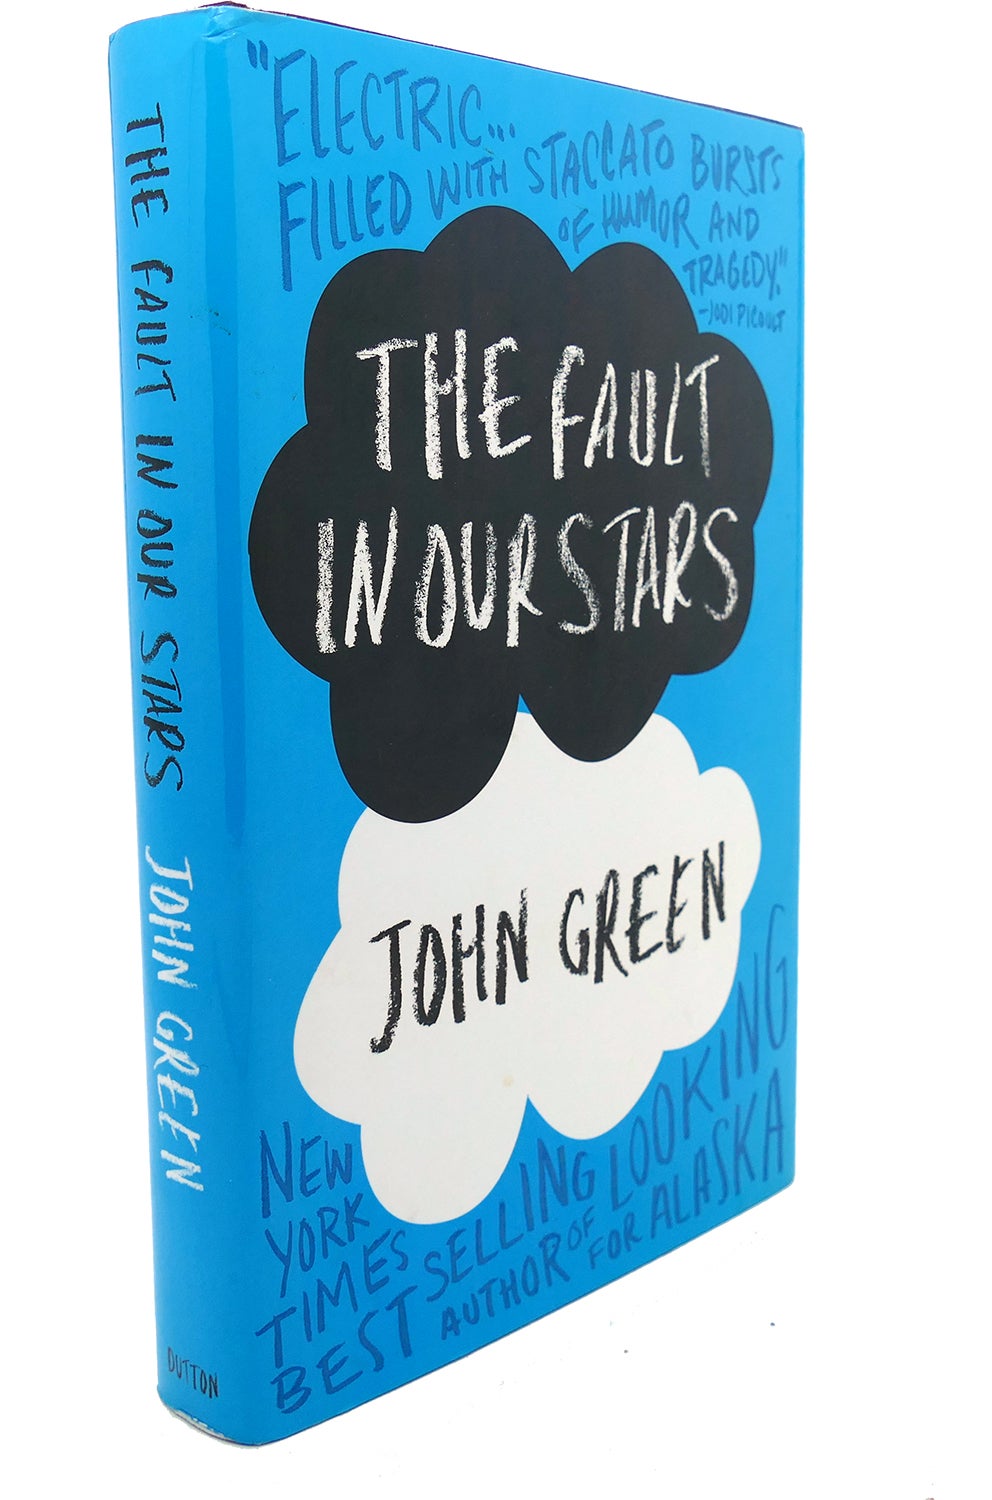  Colpa delle stelle: 9788817081566: John Green: Books